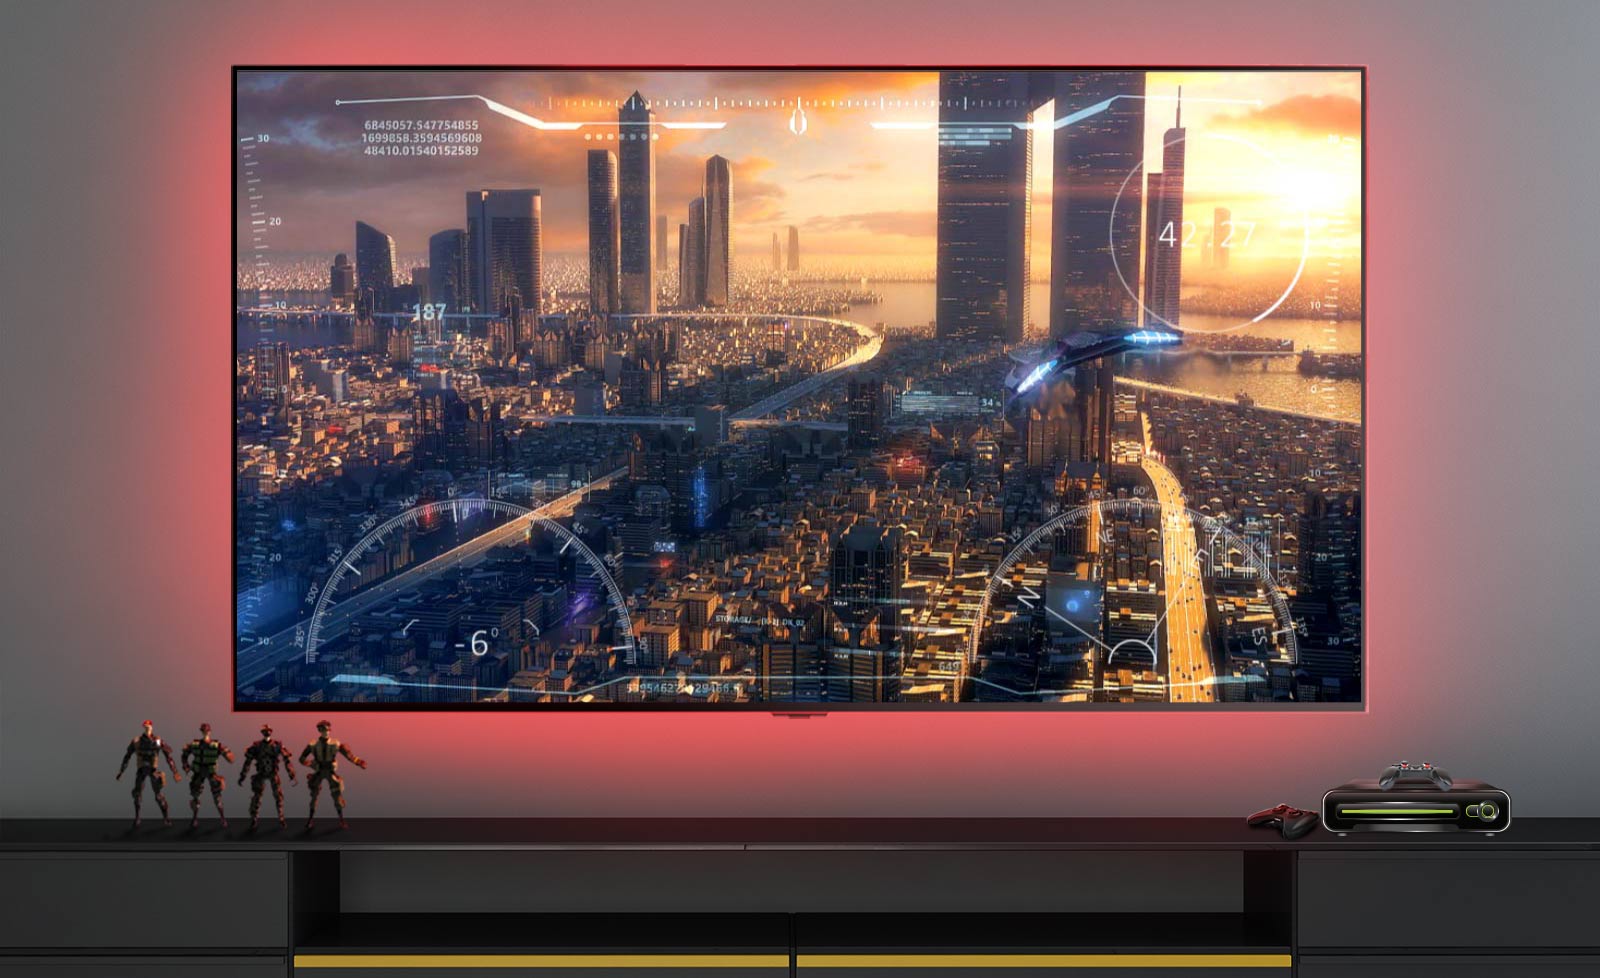 Prizor iz video igre, ki prikazuje vesoljsko ladjo, ki leti nad mestom, prikazan na televizijskem zaslonu (predvajaj video).